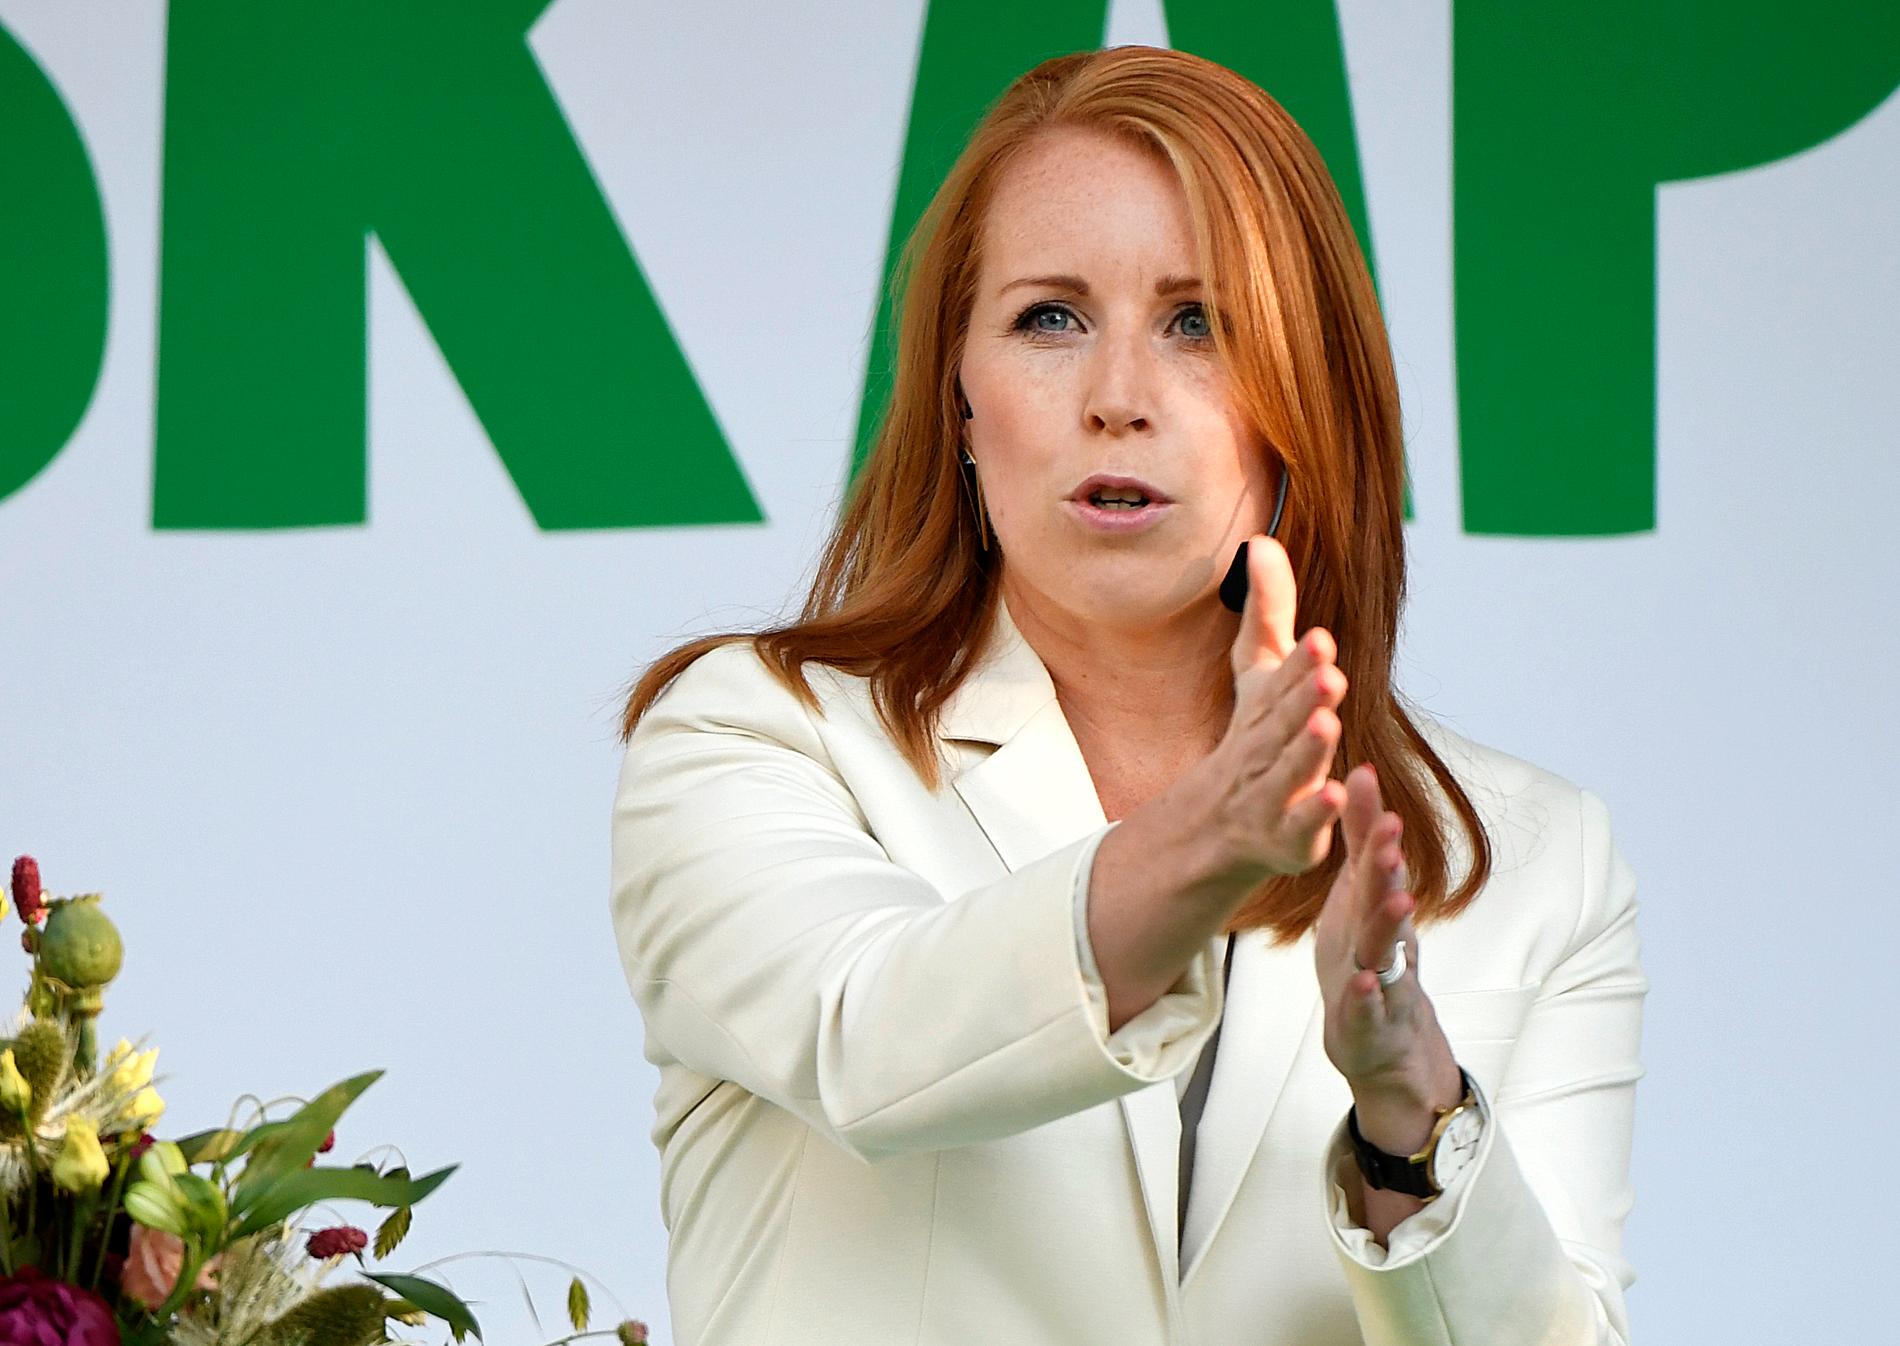 Centerpartiets ledare Annie Lööf kräver att regeringen ”lägger korten på bordet” gällande Transportstyrelsens it-skandal.